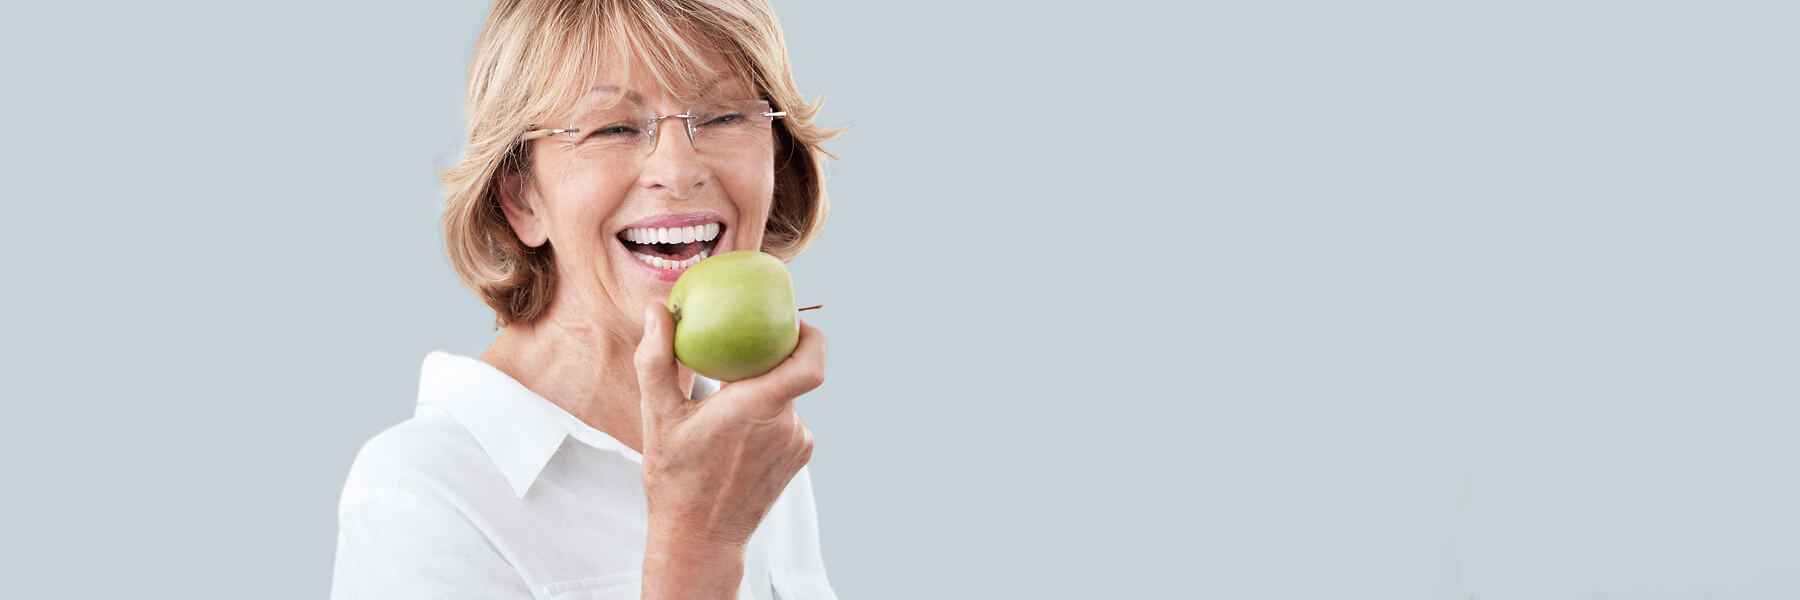 Seniorin lächelt mit einem Apfel im Hand